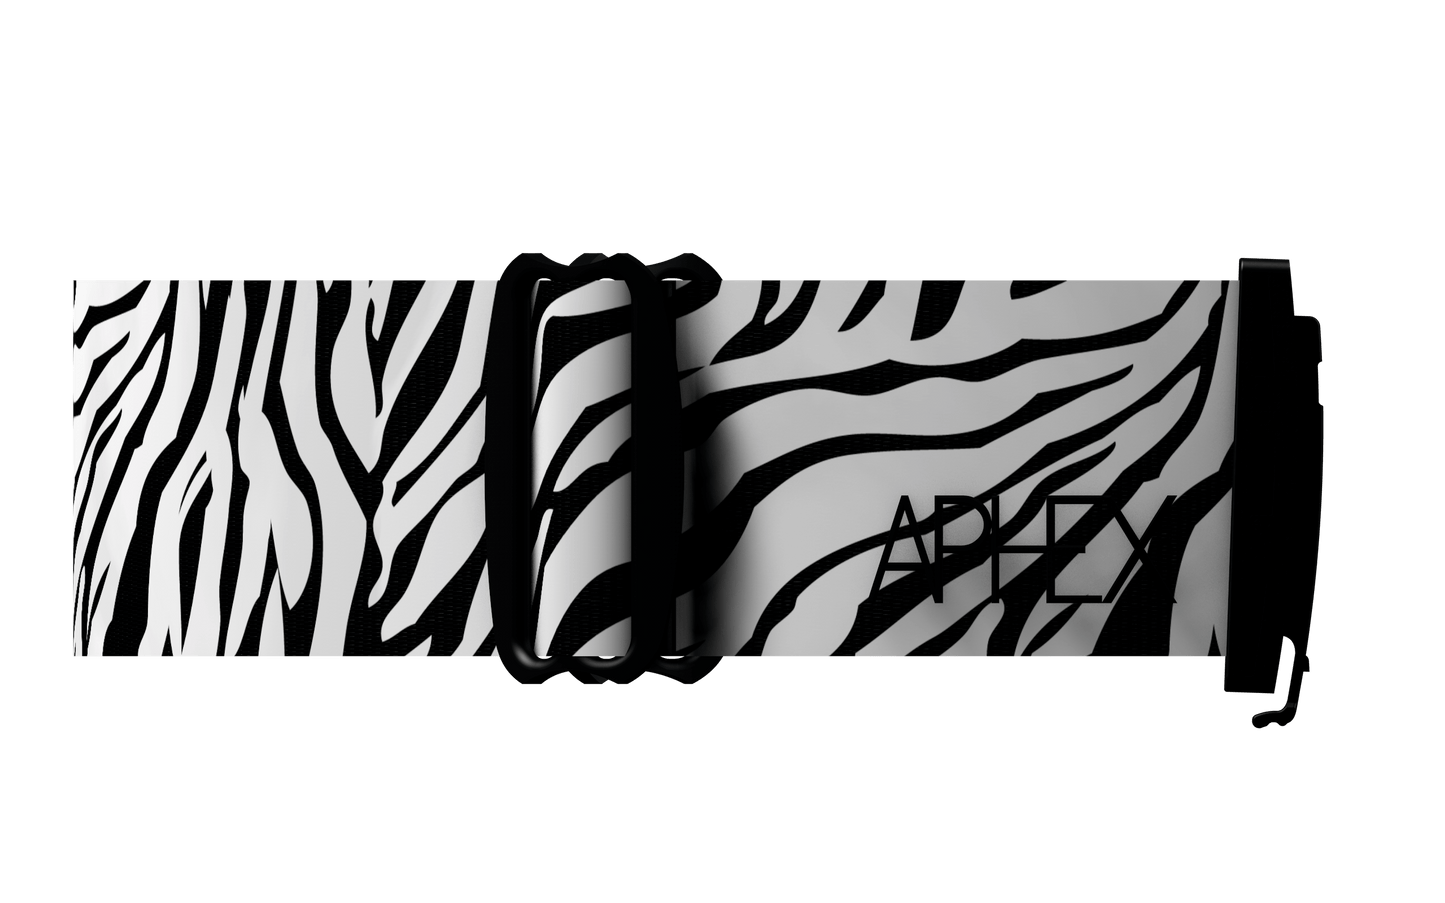 Zebra Strap